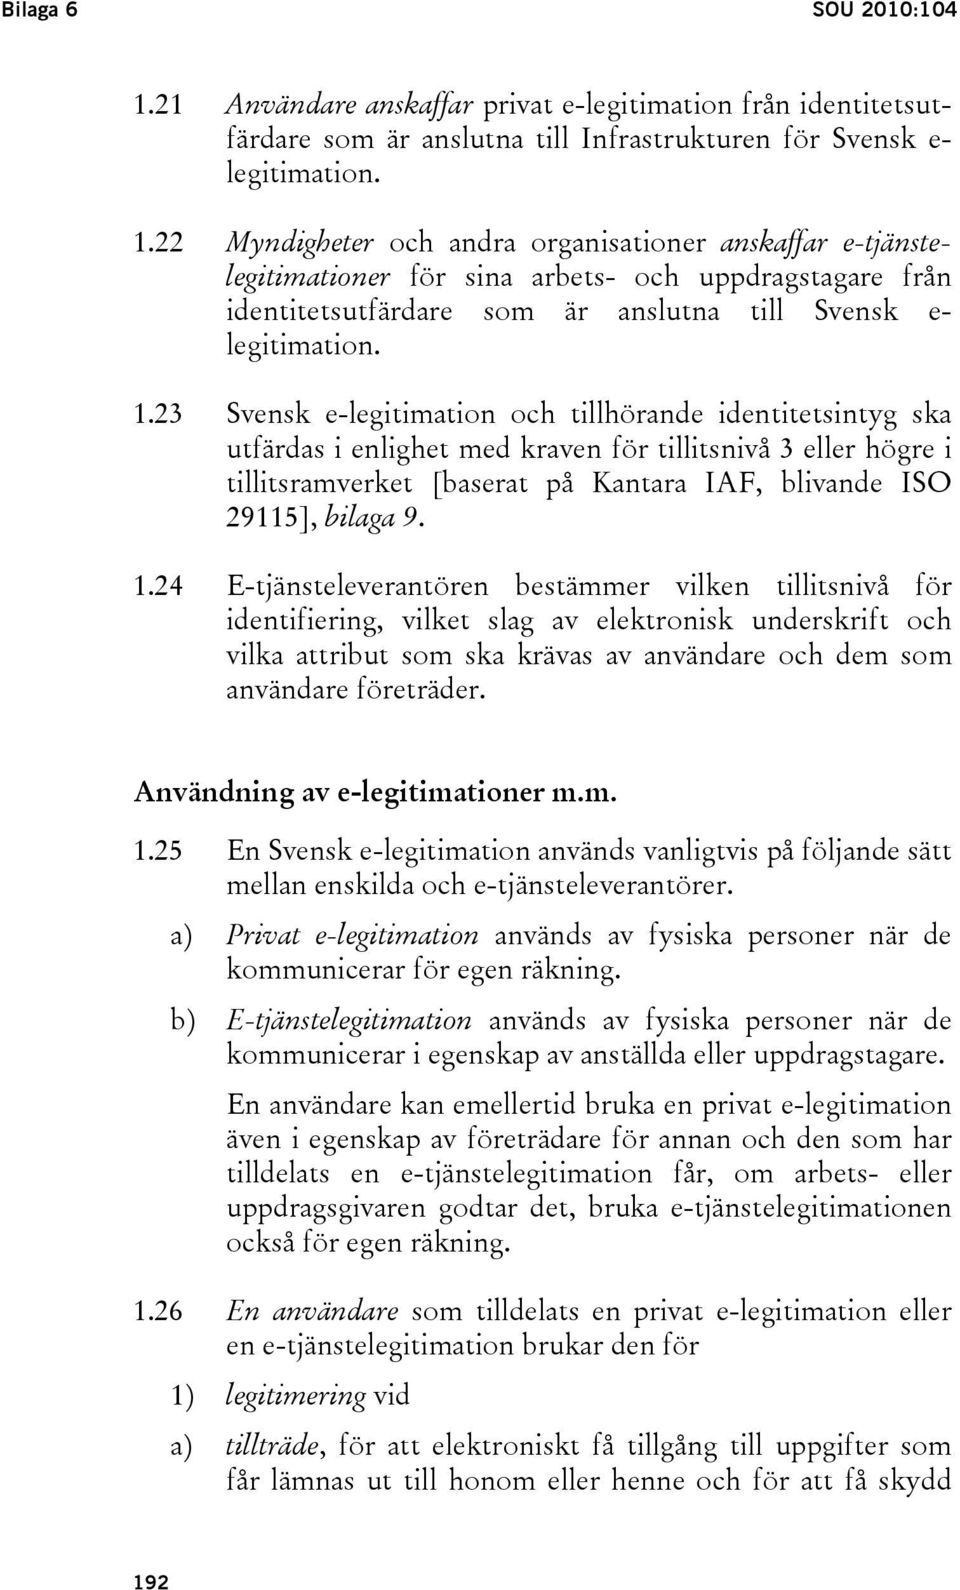 22 Myndigheter och andra organisationer anskaffar e-tjänstelegitimationer för sina arbets- och uppdragstagare från identitetsutfärdare som är anslutna till Svensk e- legitimation. 1.